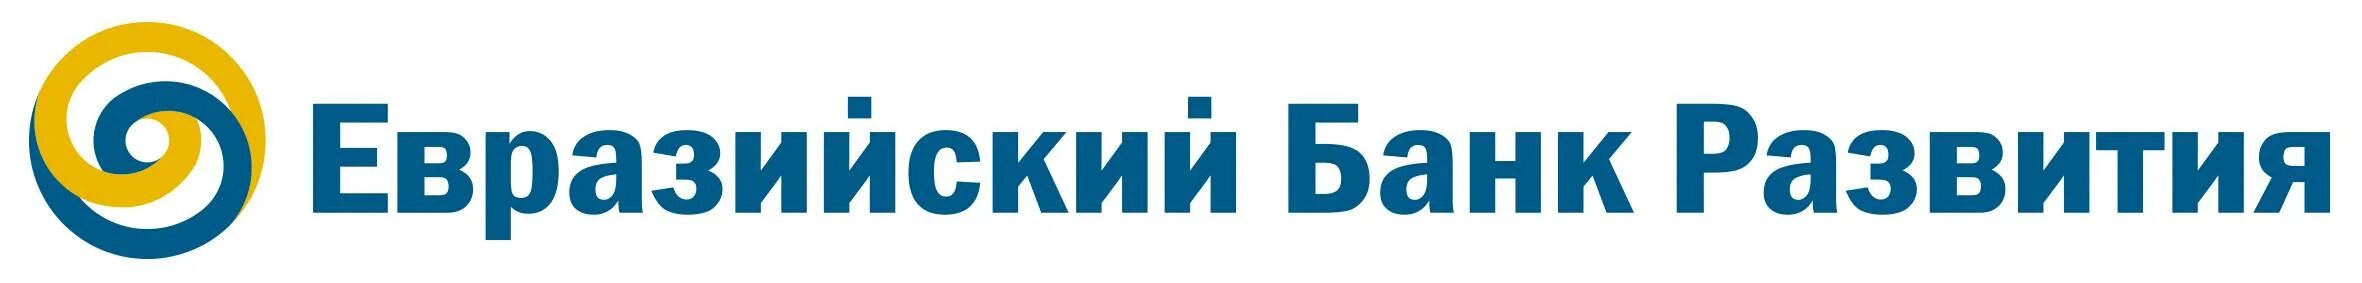 Банки евразия. ЕАБР Евразийский банк развития. Евразийский банк развития лого. Евразийский банк развития флаг. Логотип Евразийского банка развития.